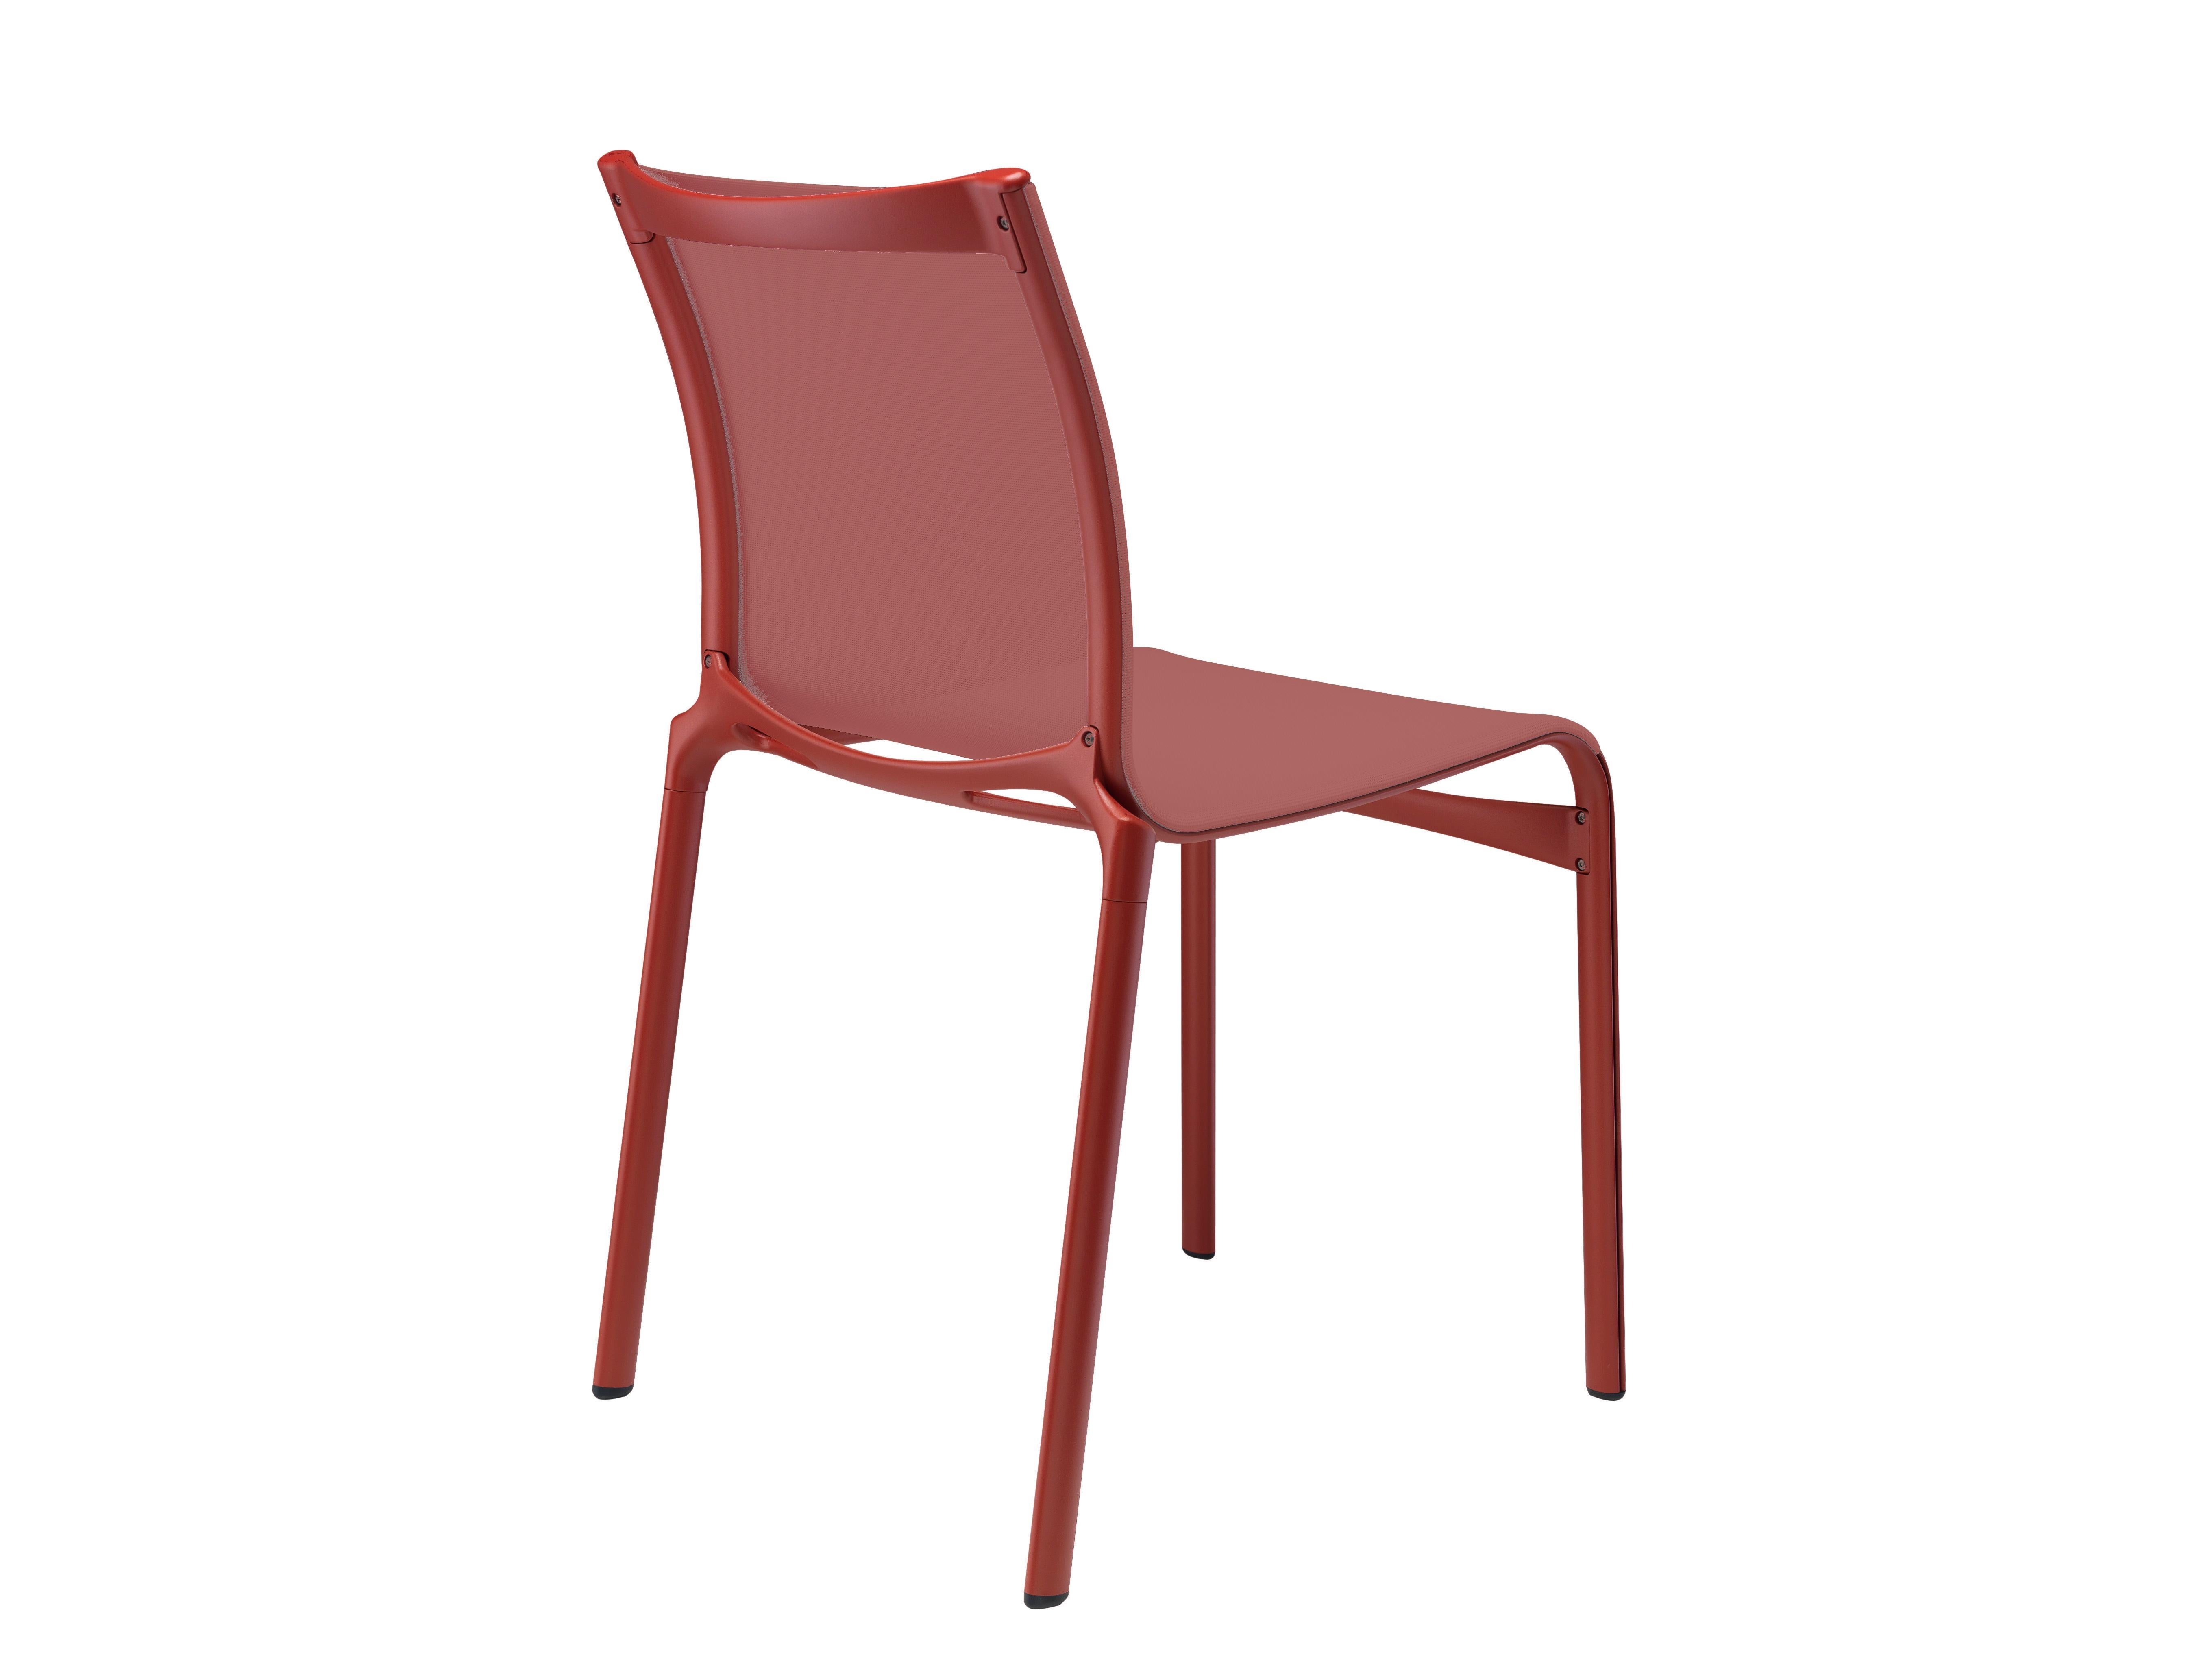 Alias Bigframe 44 stuhl aus korallenrotem netz mit lackiertem aluminiumgestell by Alberto Meda

Stapelbarer Stuhl mit einer Struktur aus stranggepresstem Aluminiumprofil und Elementen aus Aluminiumdruckguss. Sitz und Rückenlehne aus feuerhemmendem